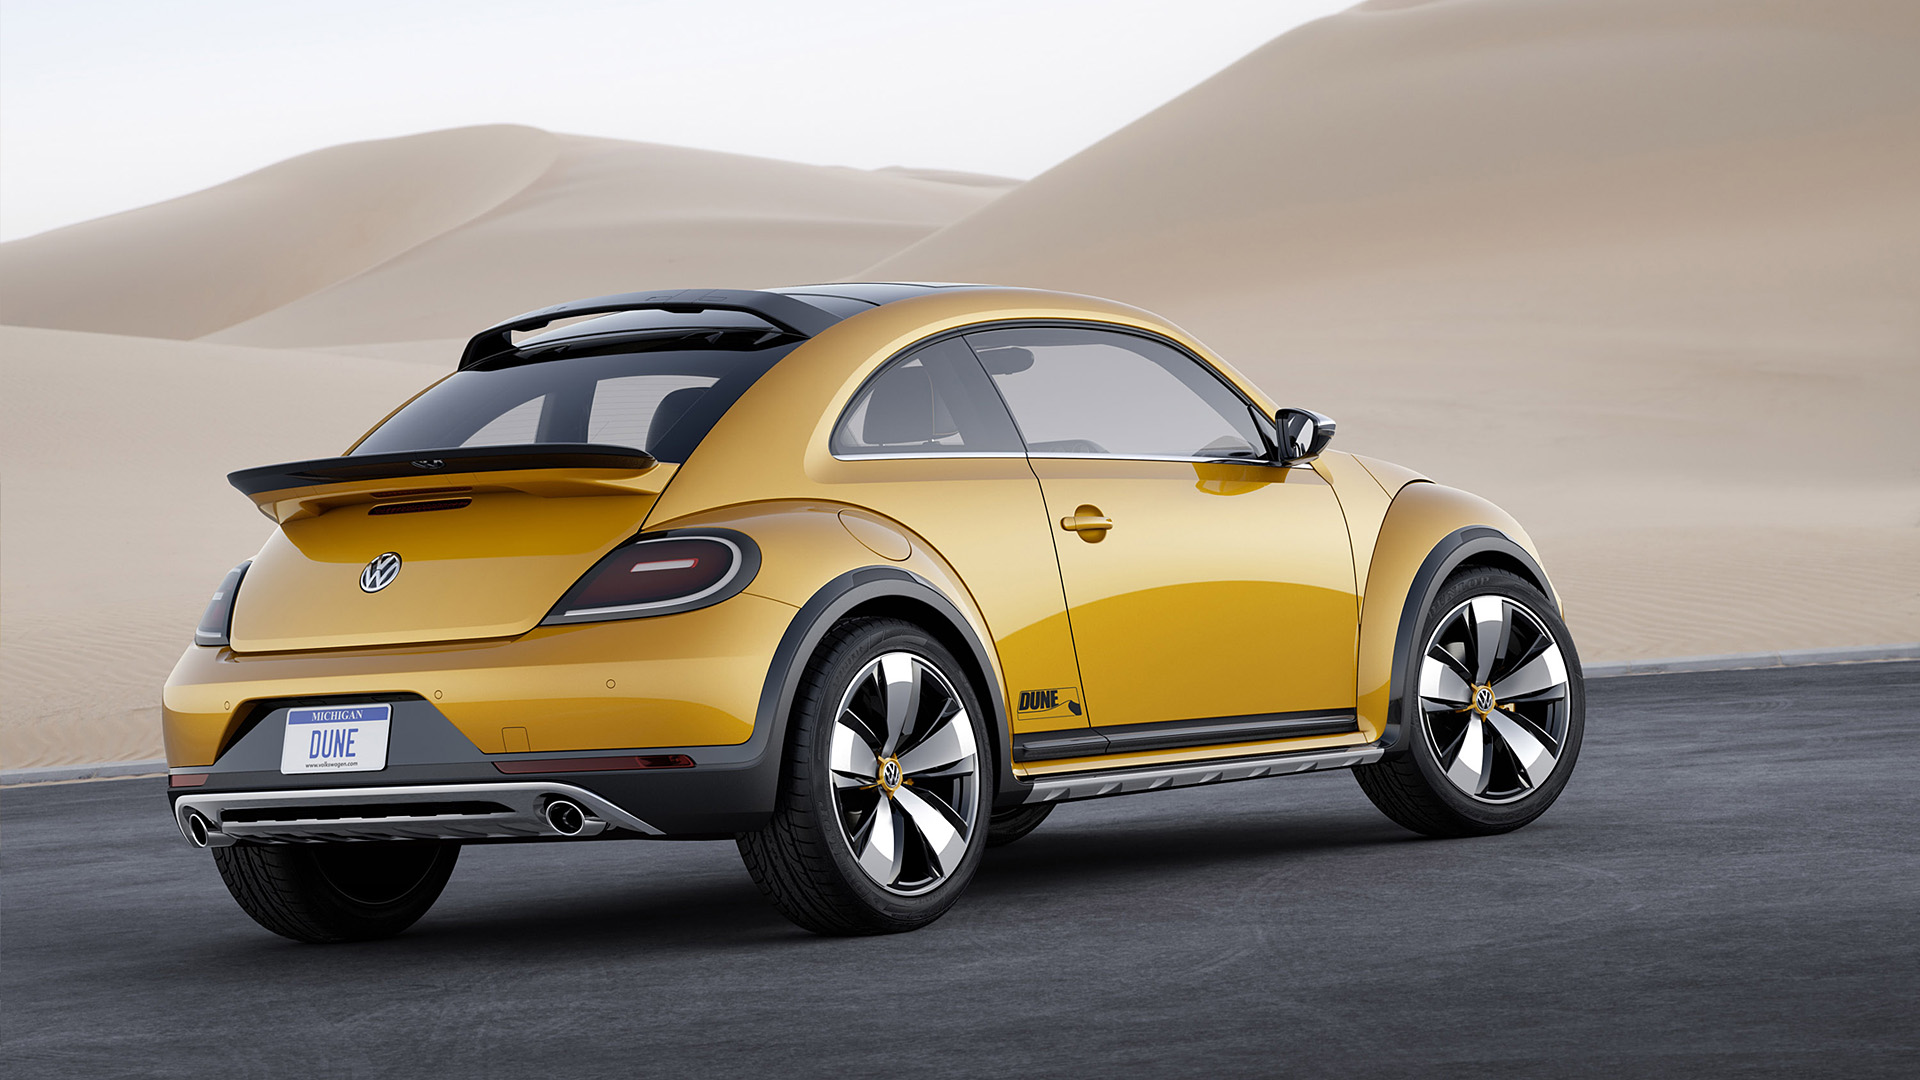  2014 Volkswagen Beetle Dune Concept Wallpaper.